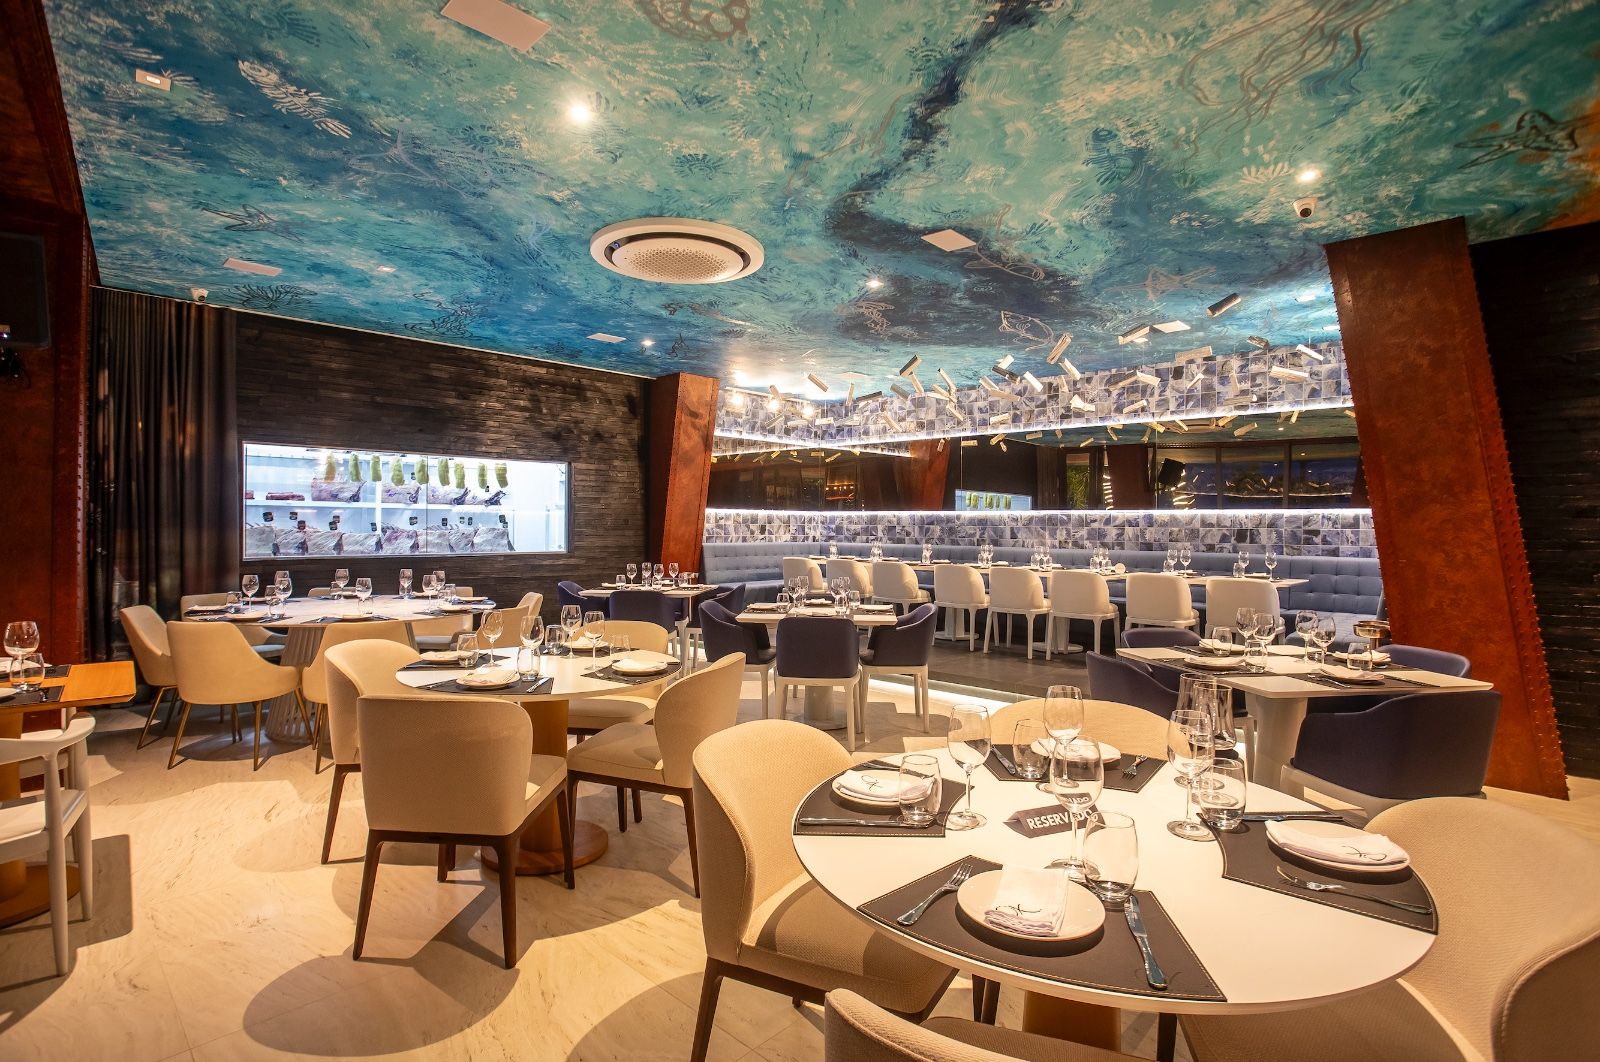 OX Room Steakhouse desce a serra e inaugura unidade em Balneário Camboriú